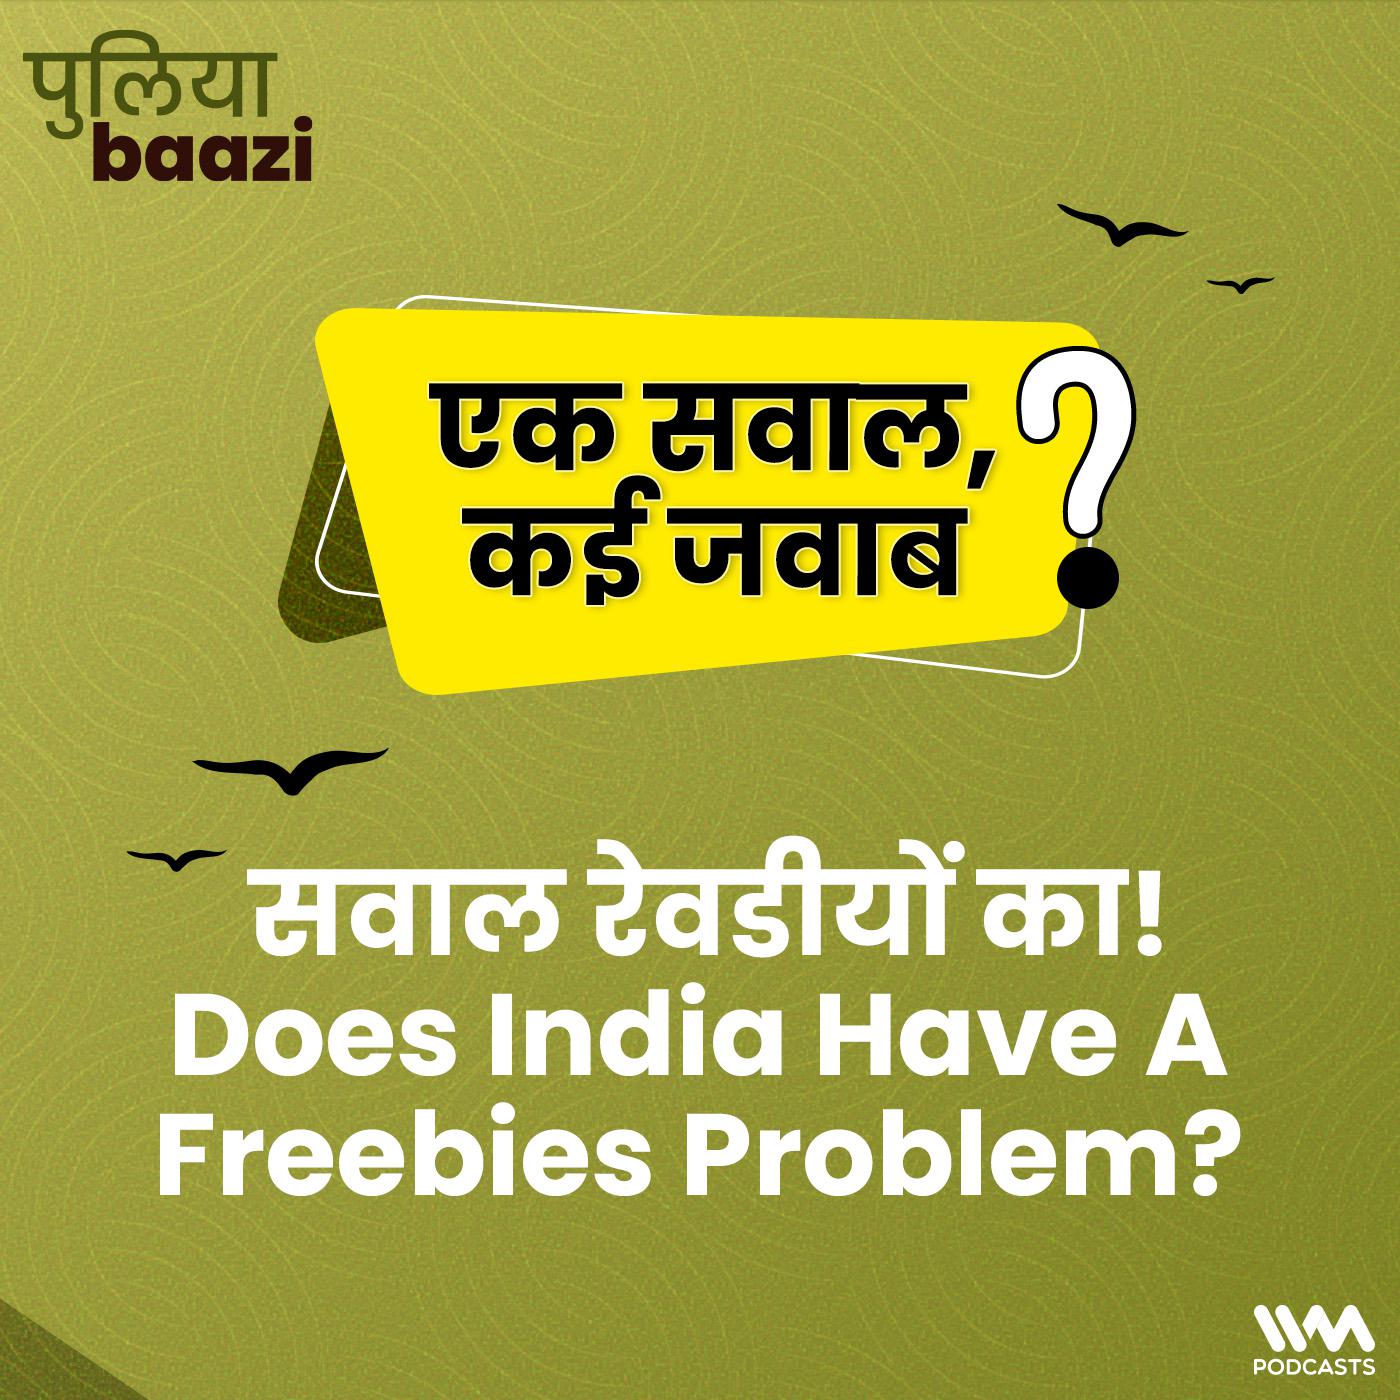 सवाल रेवडीयों का! Does India Have A Freebies Problem?